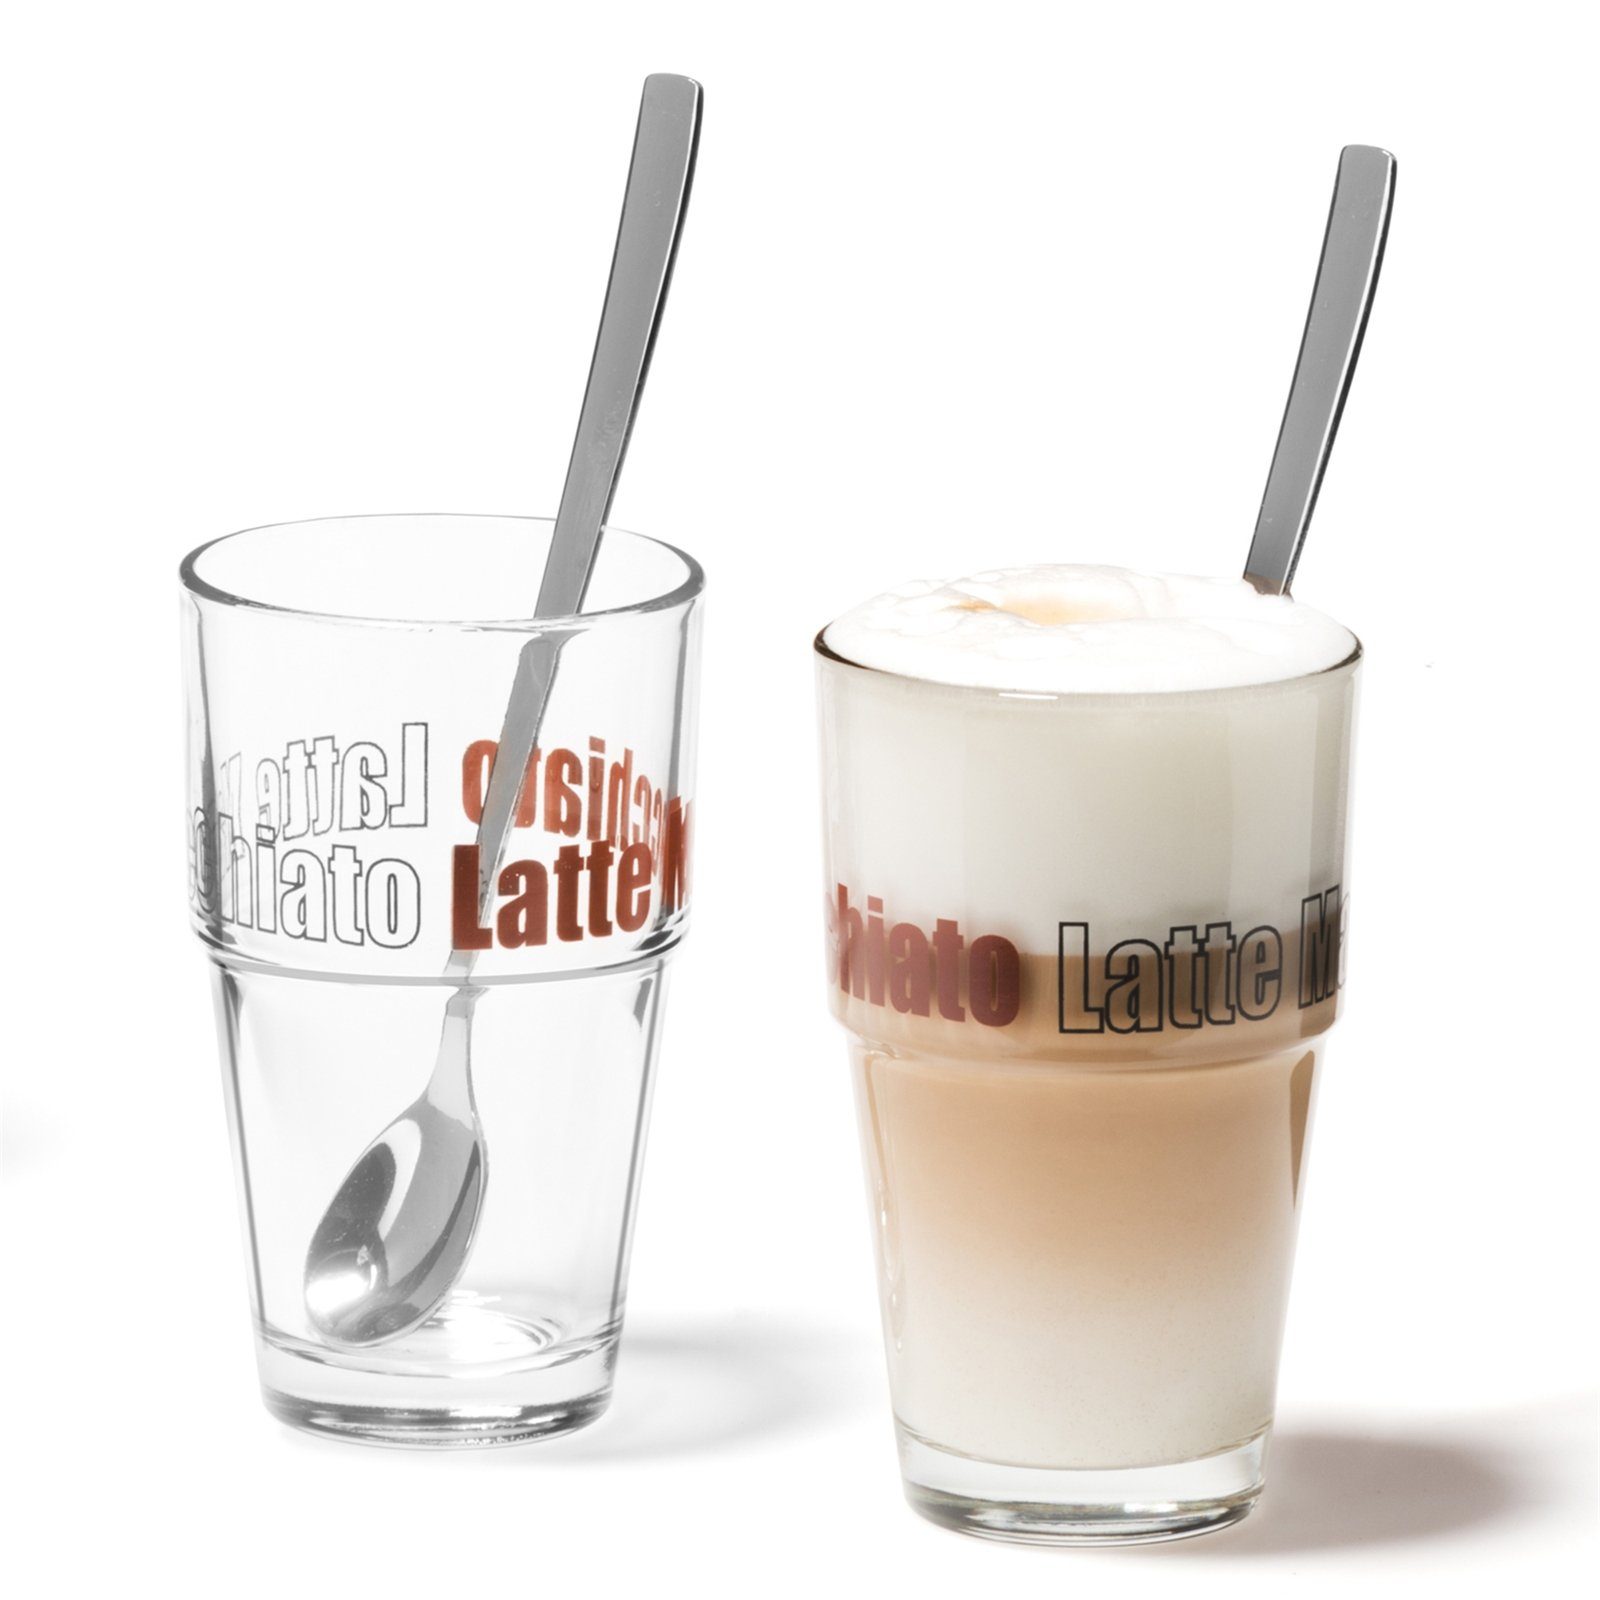 4tlg. mit Solo, Macchiatobecher formstabil Materialmix, Macchiato Latte-Macchiato-Glas Solo Löffeln Latte Set Latte Set LEONARDO LEONARDO